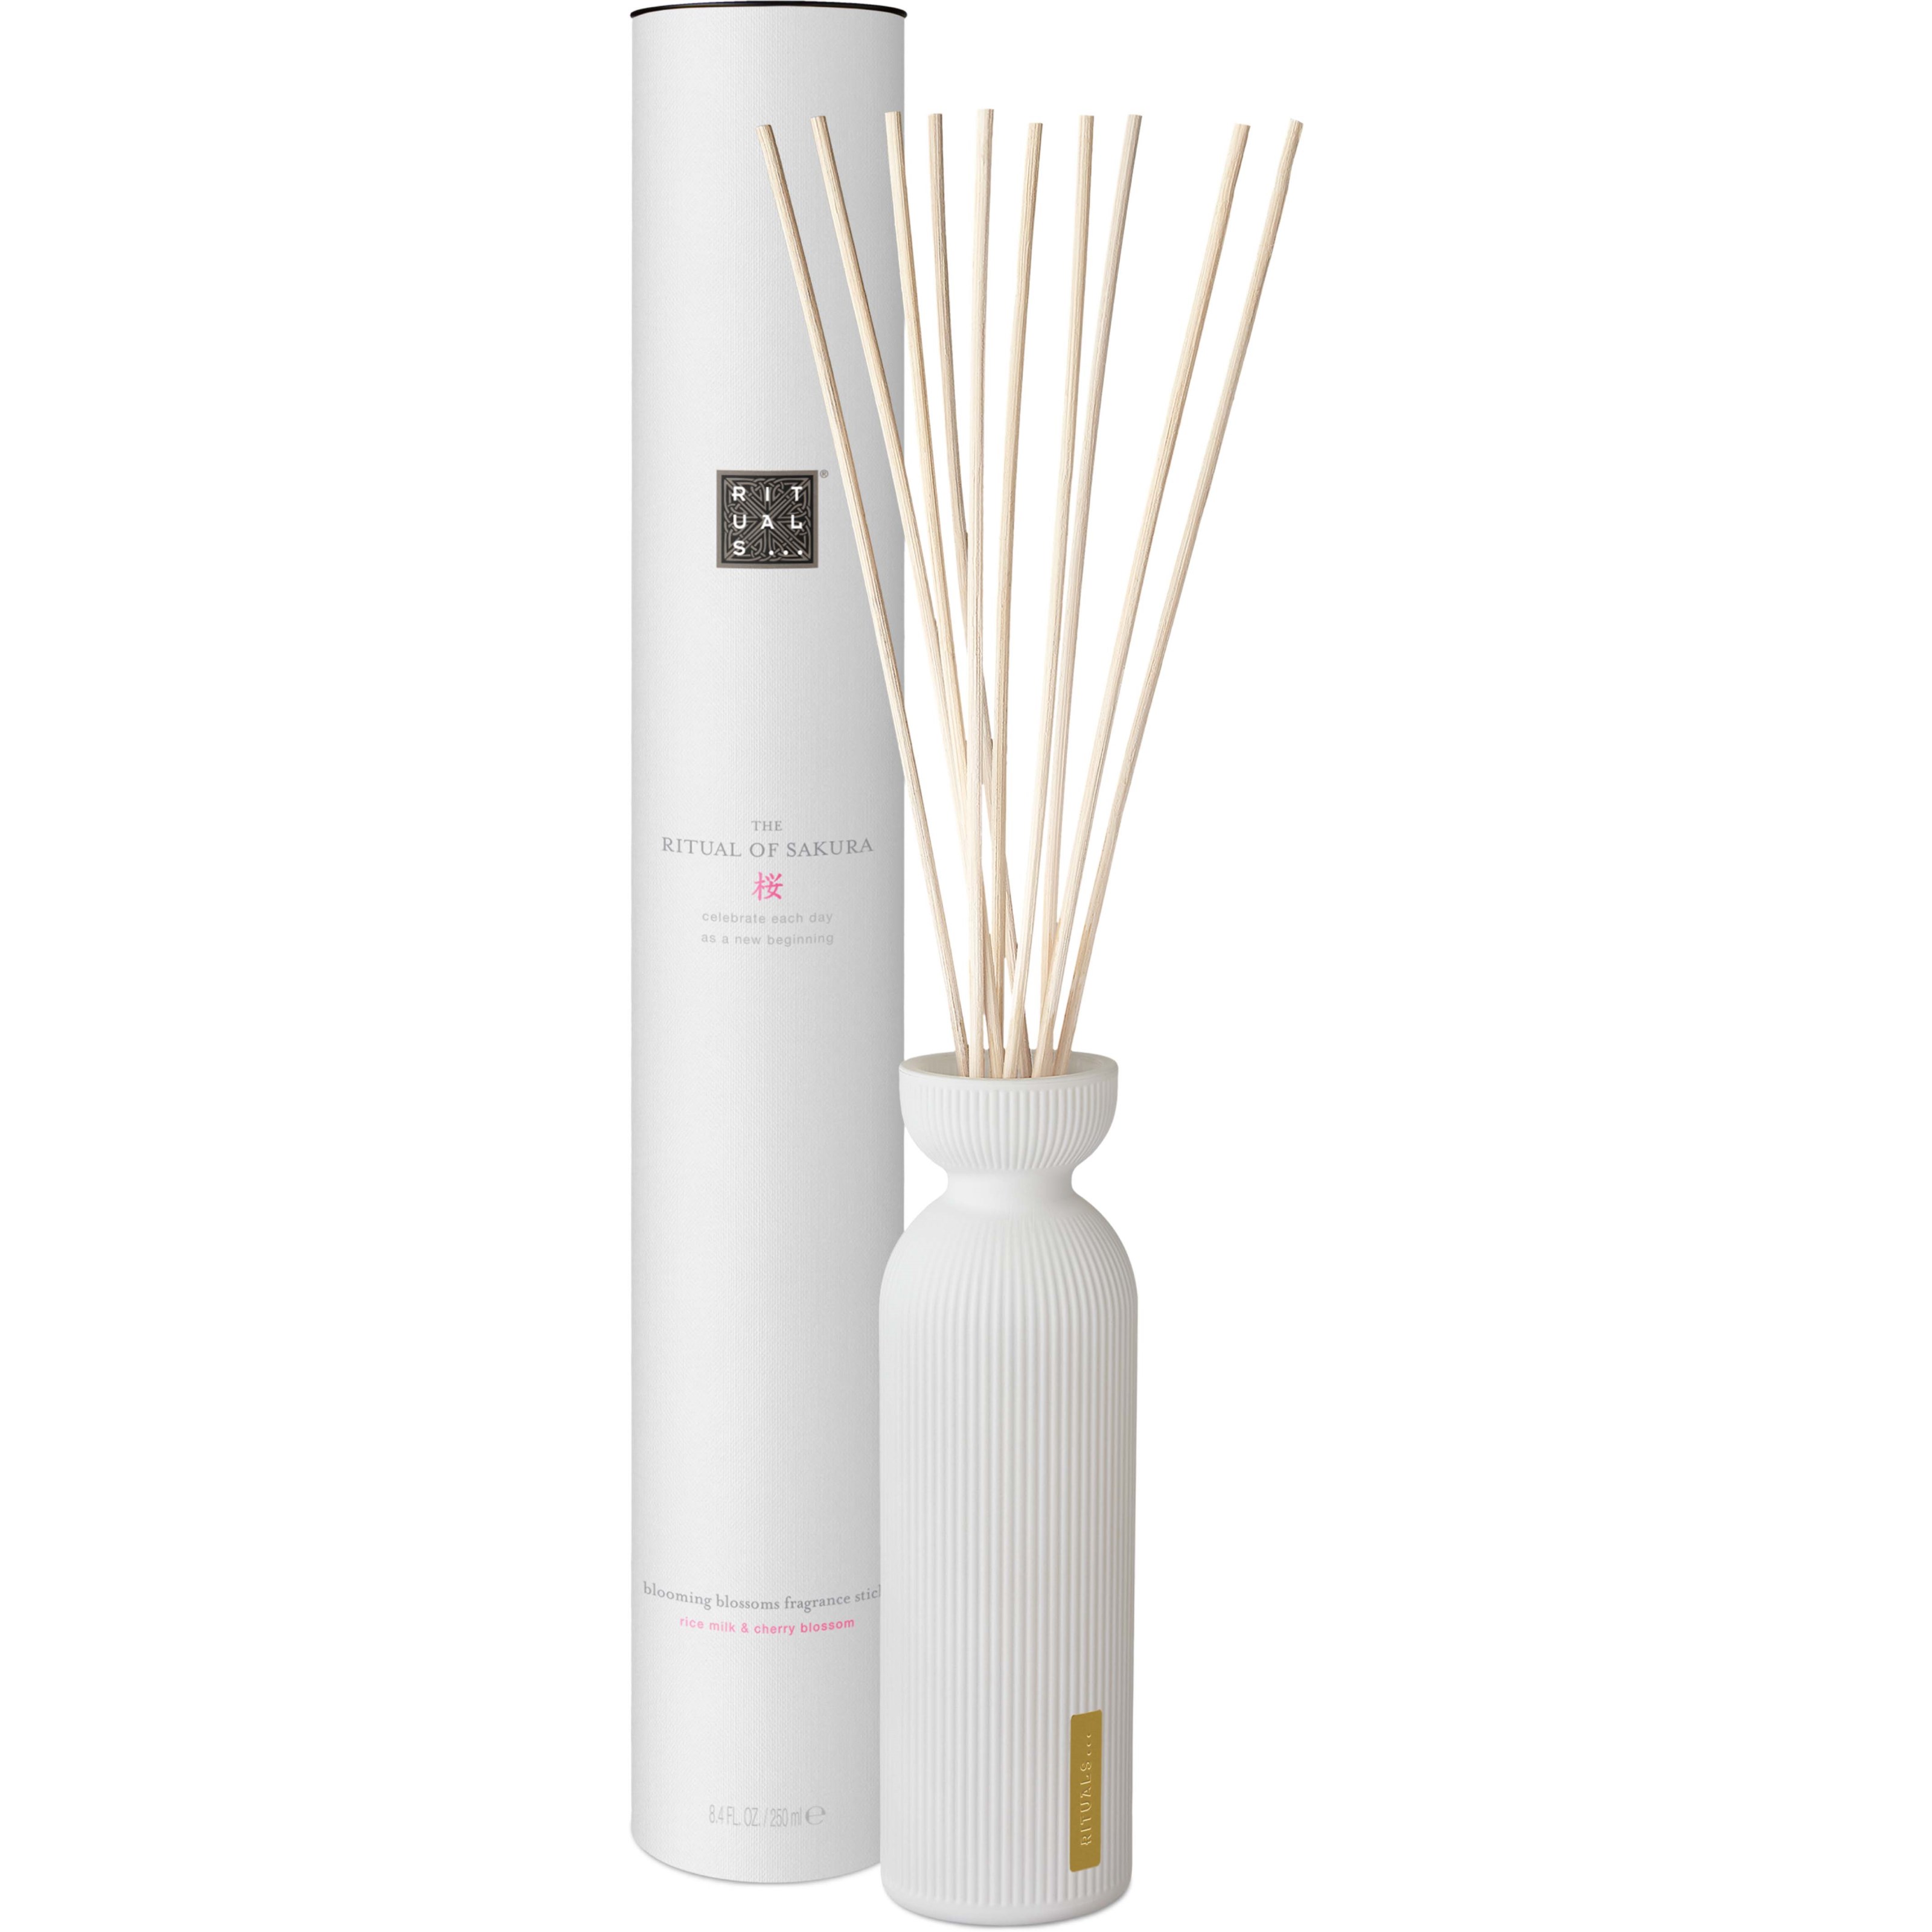 Bilde av Rituals The Ritual Of Sakura Home Fragrance Fragrance Sticks